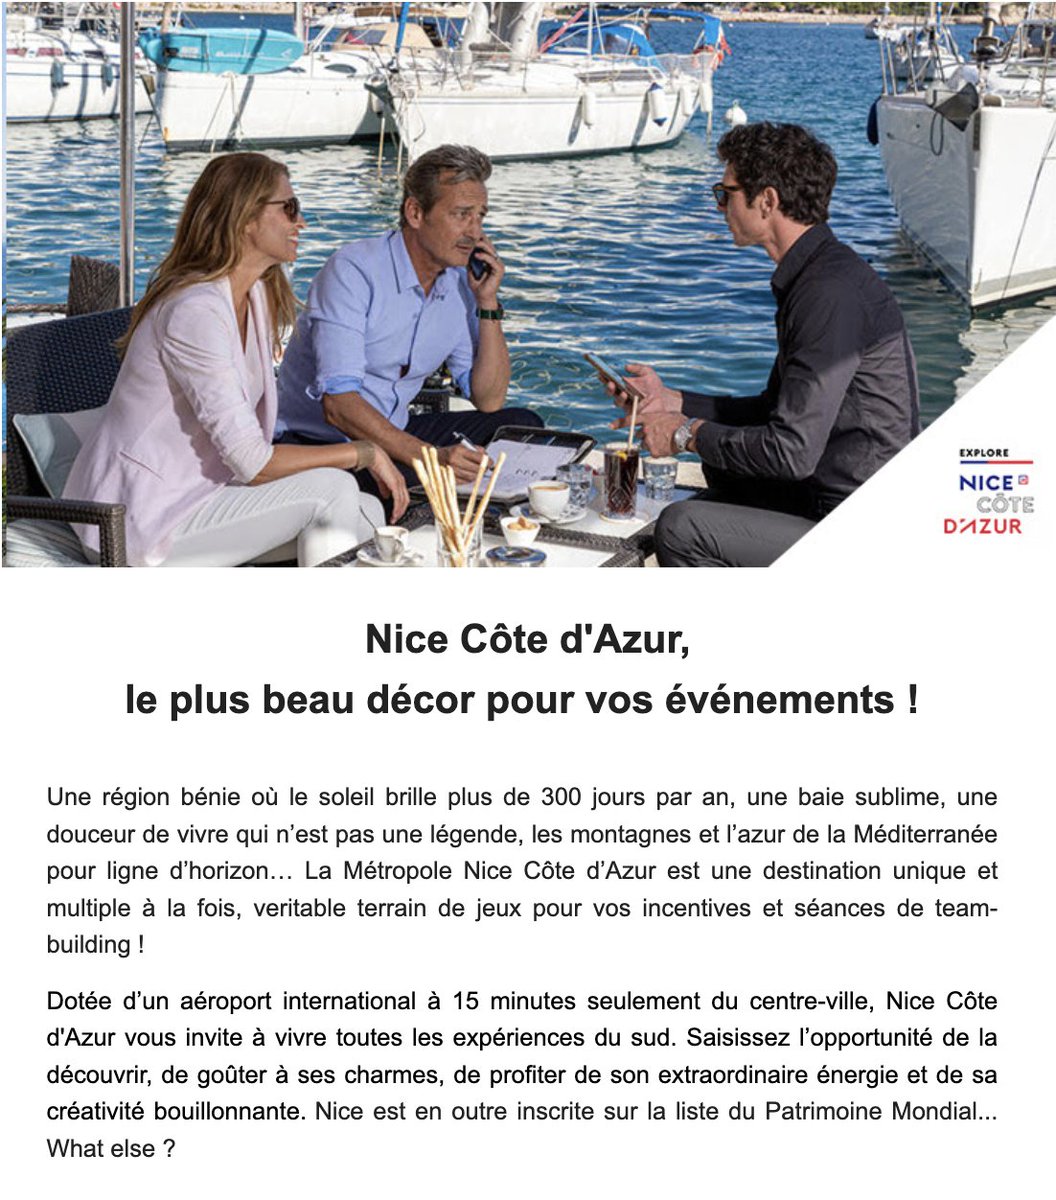 📣 Retrouvez l’essentiel de l’actualité MICE de Nice Côte d’Azur en quelques clics ! 😉
Nouveautés, offres et expériences exclusives... Abonnez-vous dès maintenant à notre Newsletter pro👉bit.ly/3SWNuSs

#MeetInNiceCotedAzur #ExploreNiceCotedAzur